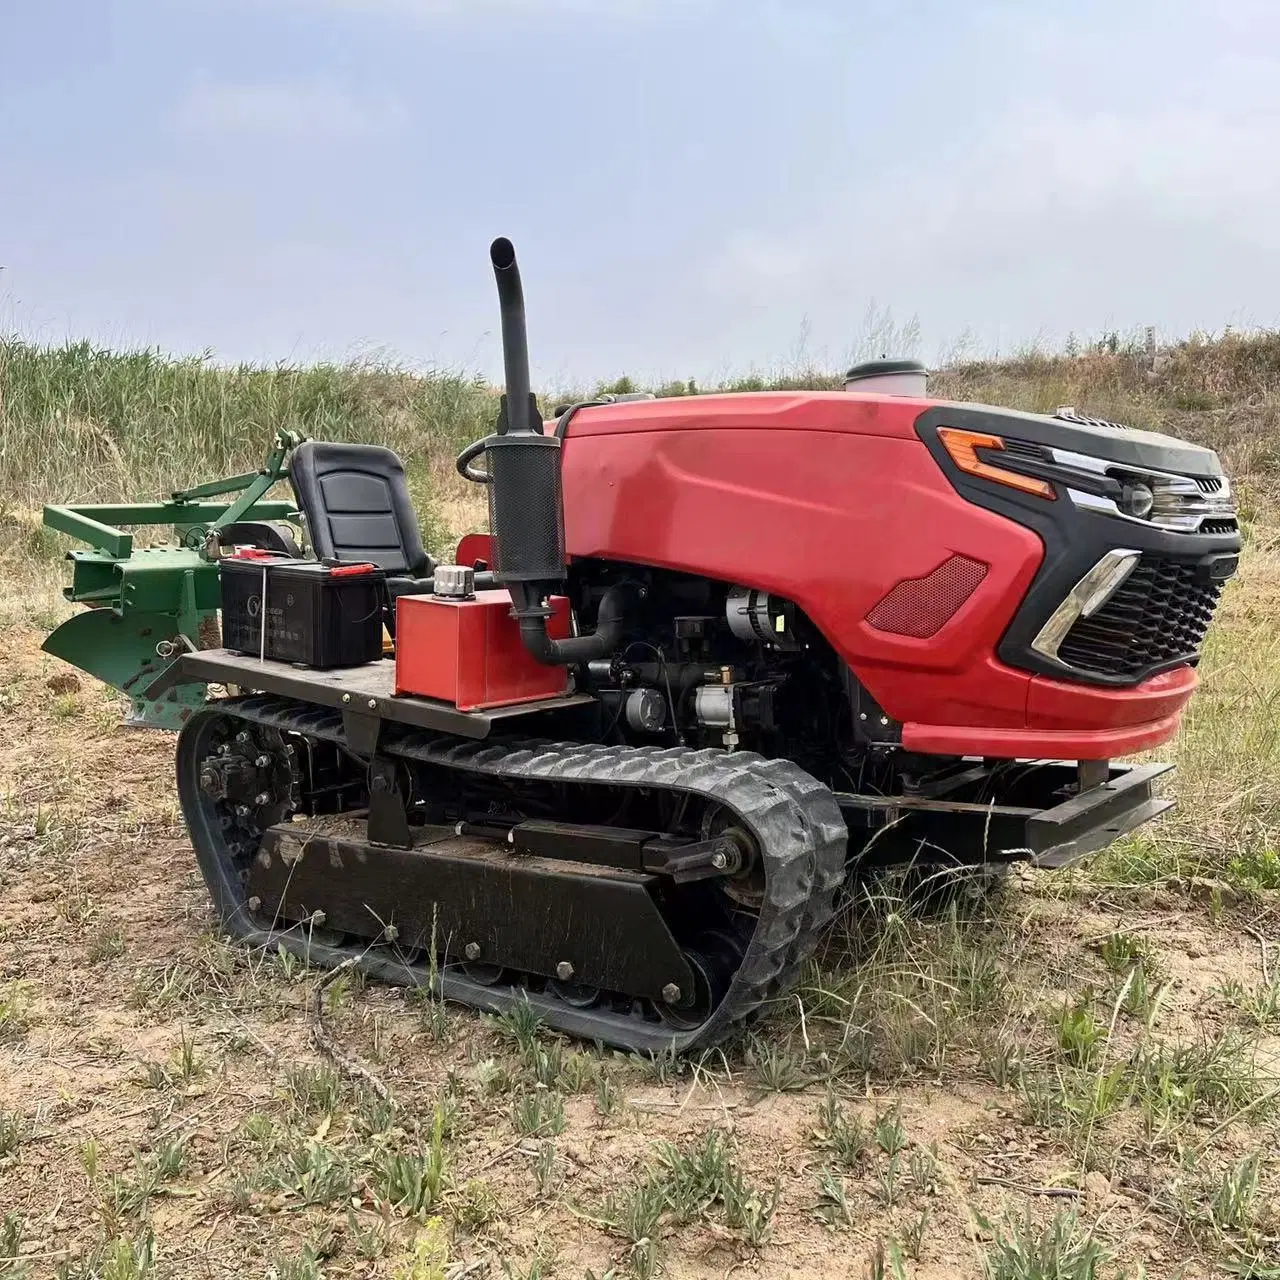 Tracteur agricole robuste pour machine agricole de grande taille, puissance élevée de 25 à 120 chevaux.